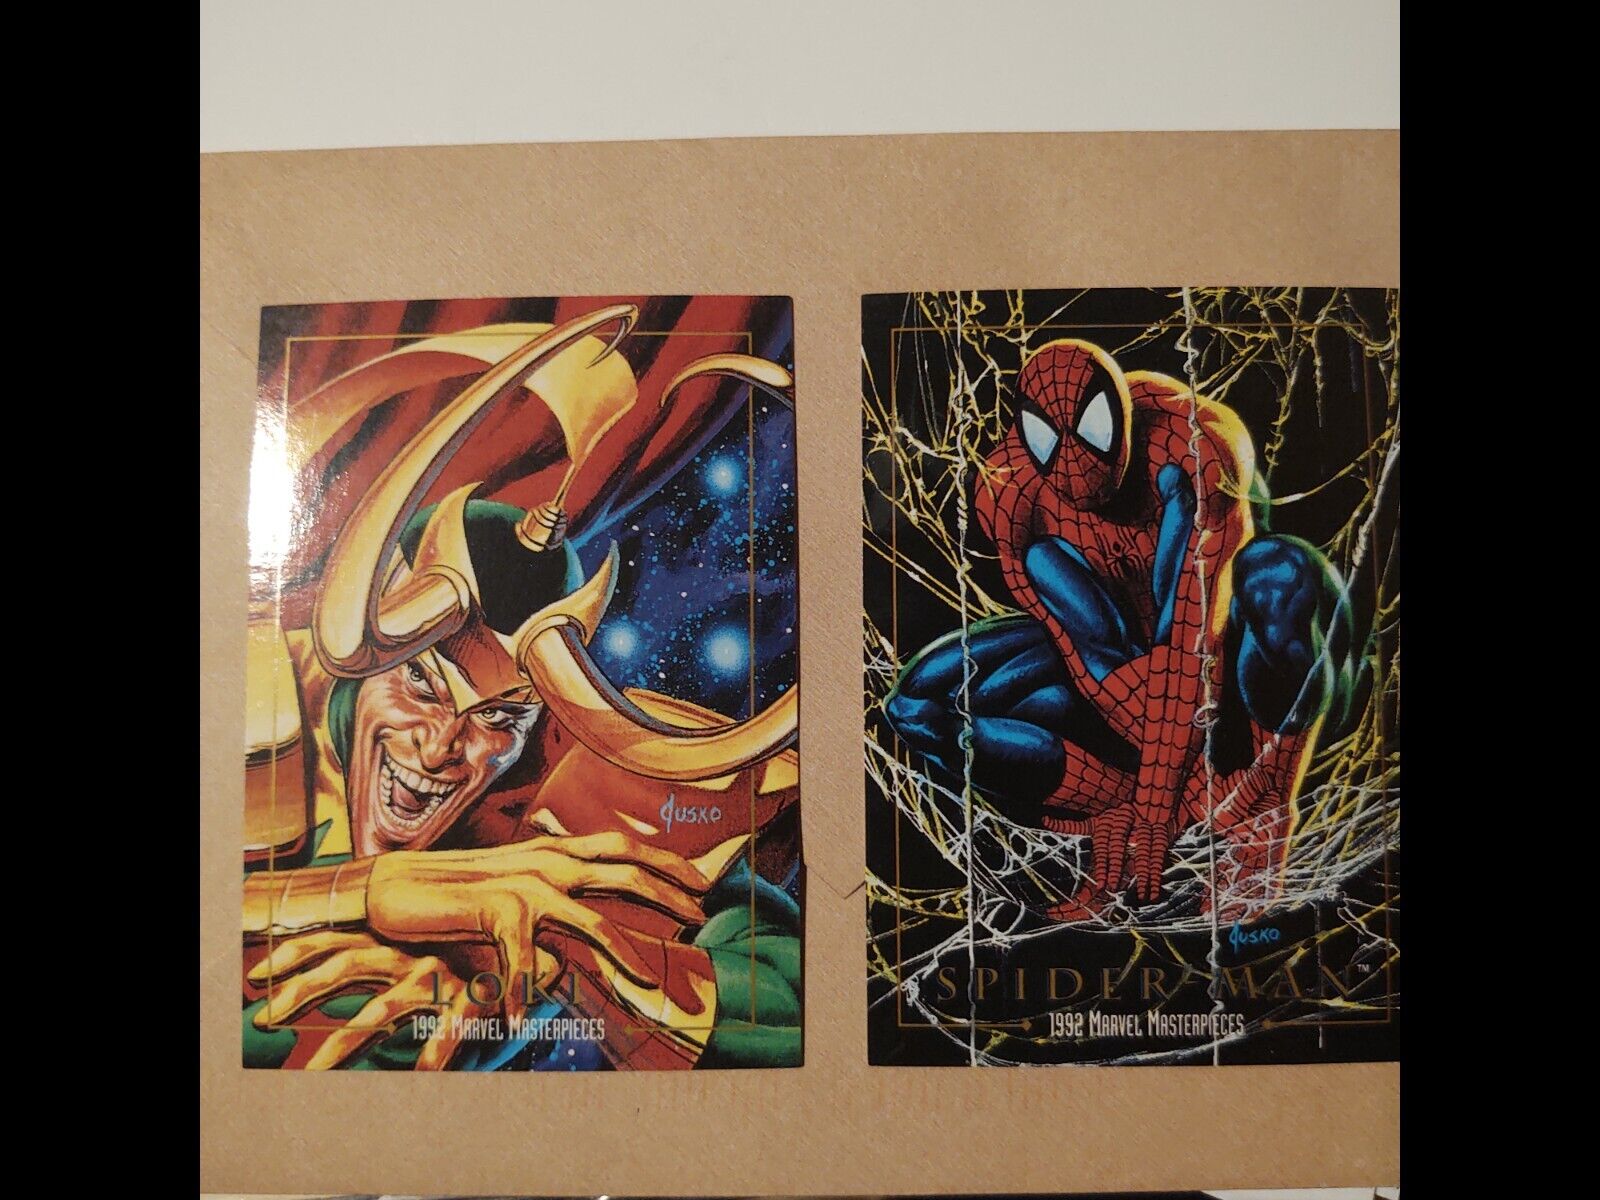 1992 marvel masterpieces Loki#50& Spiderman #87